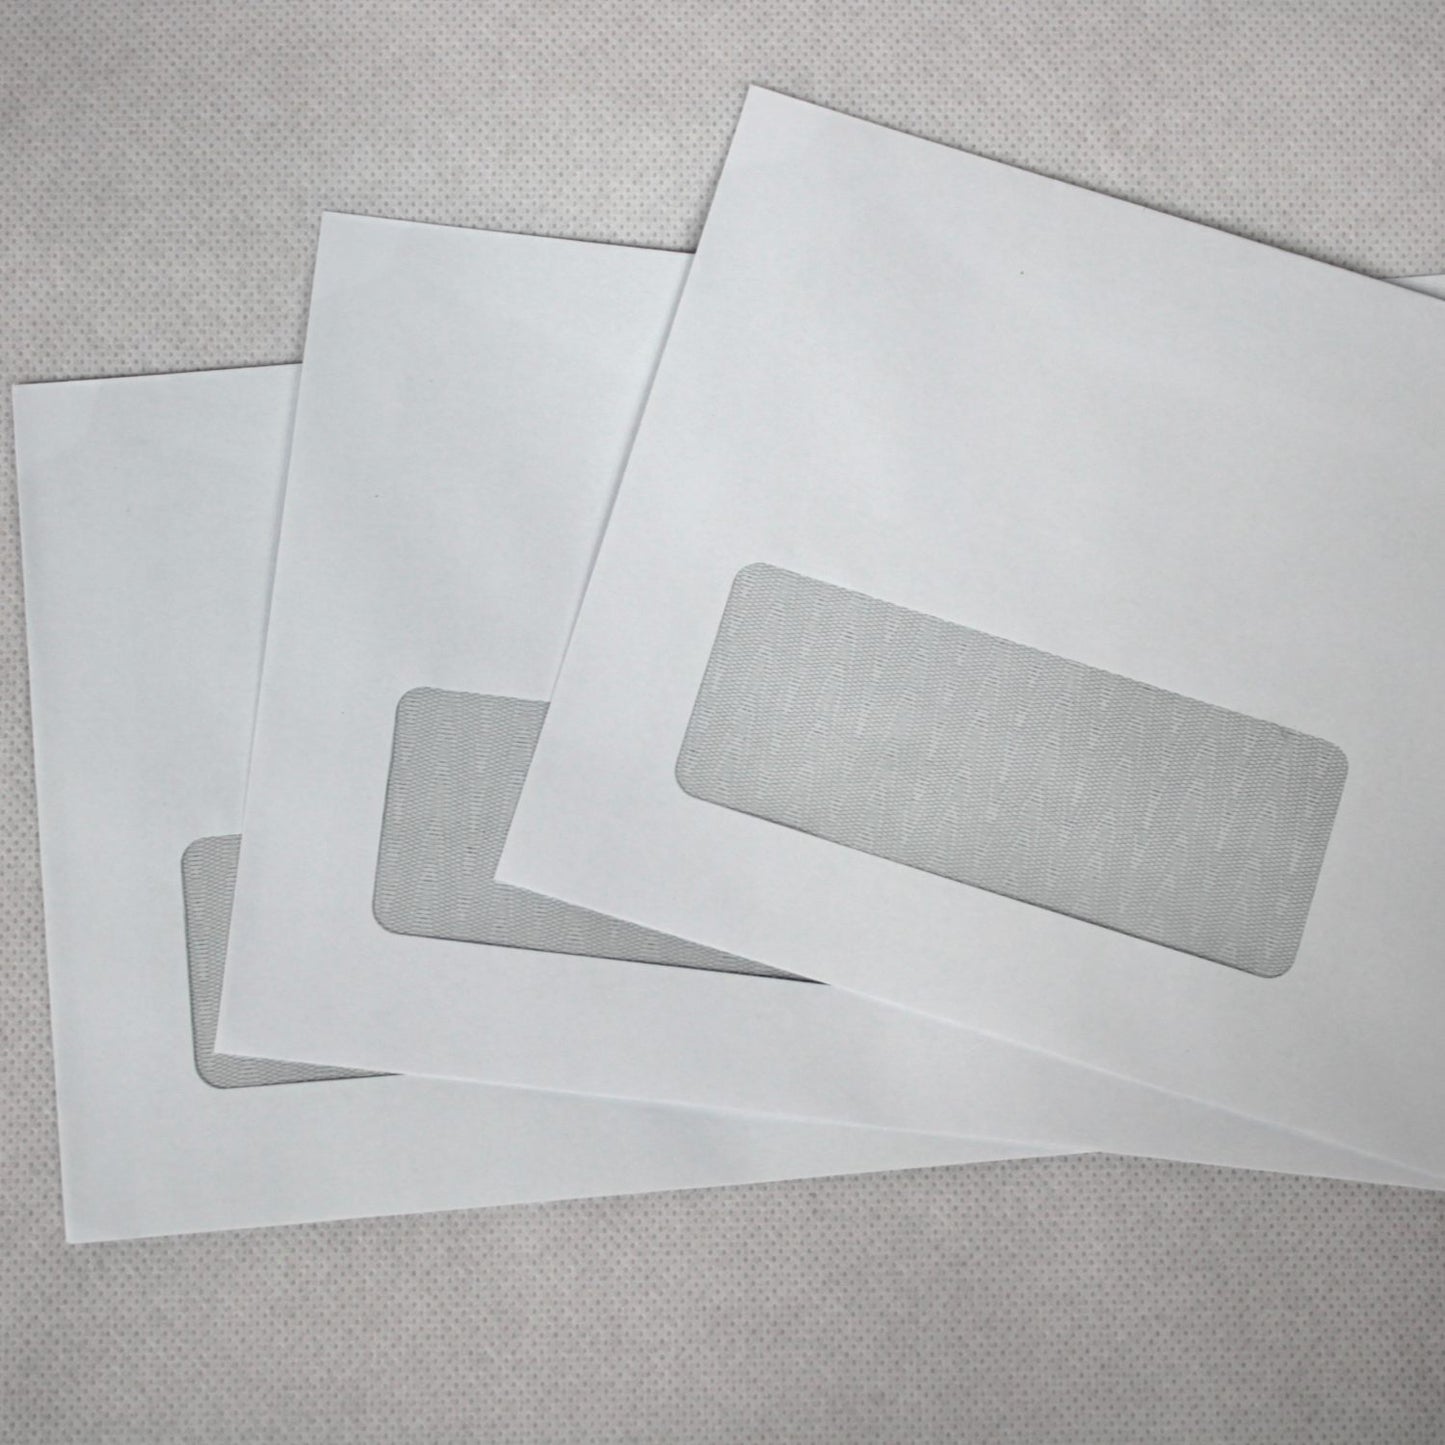 121x235mm DL+ White Gummed Envelopes (Window 35x90mm)